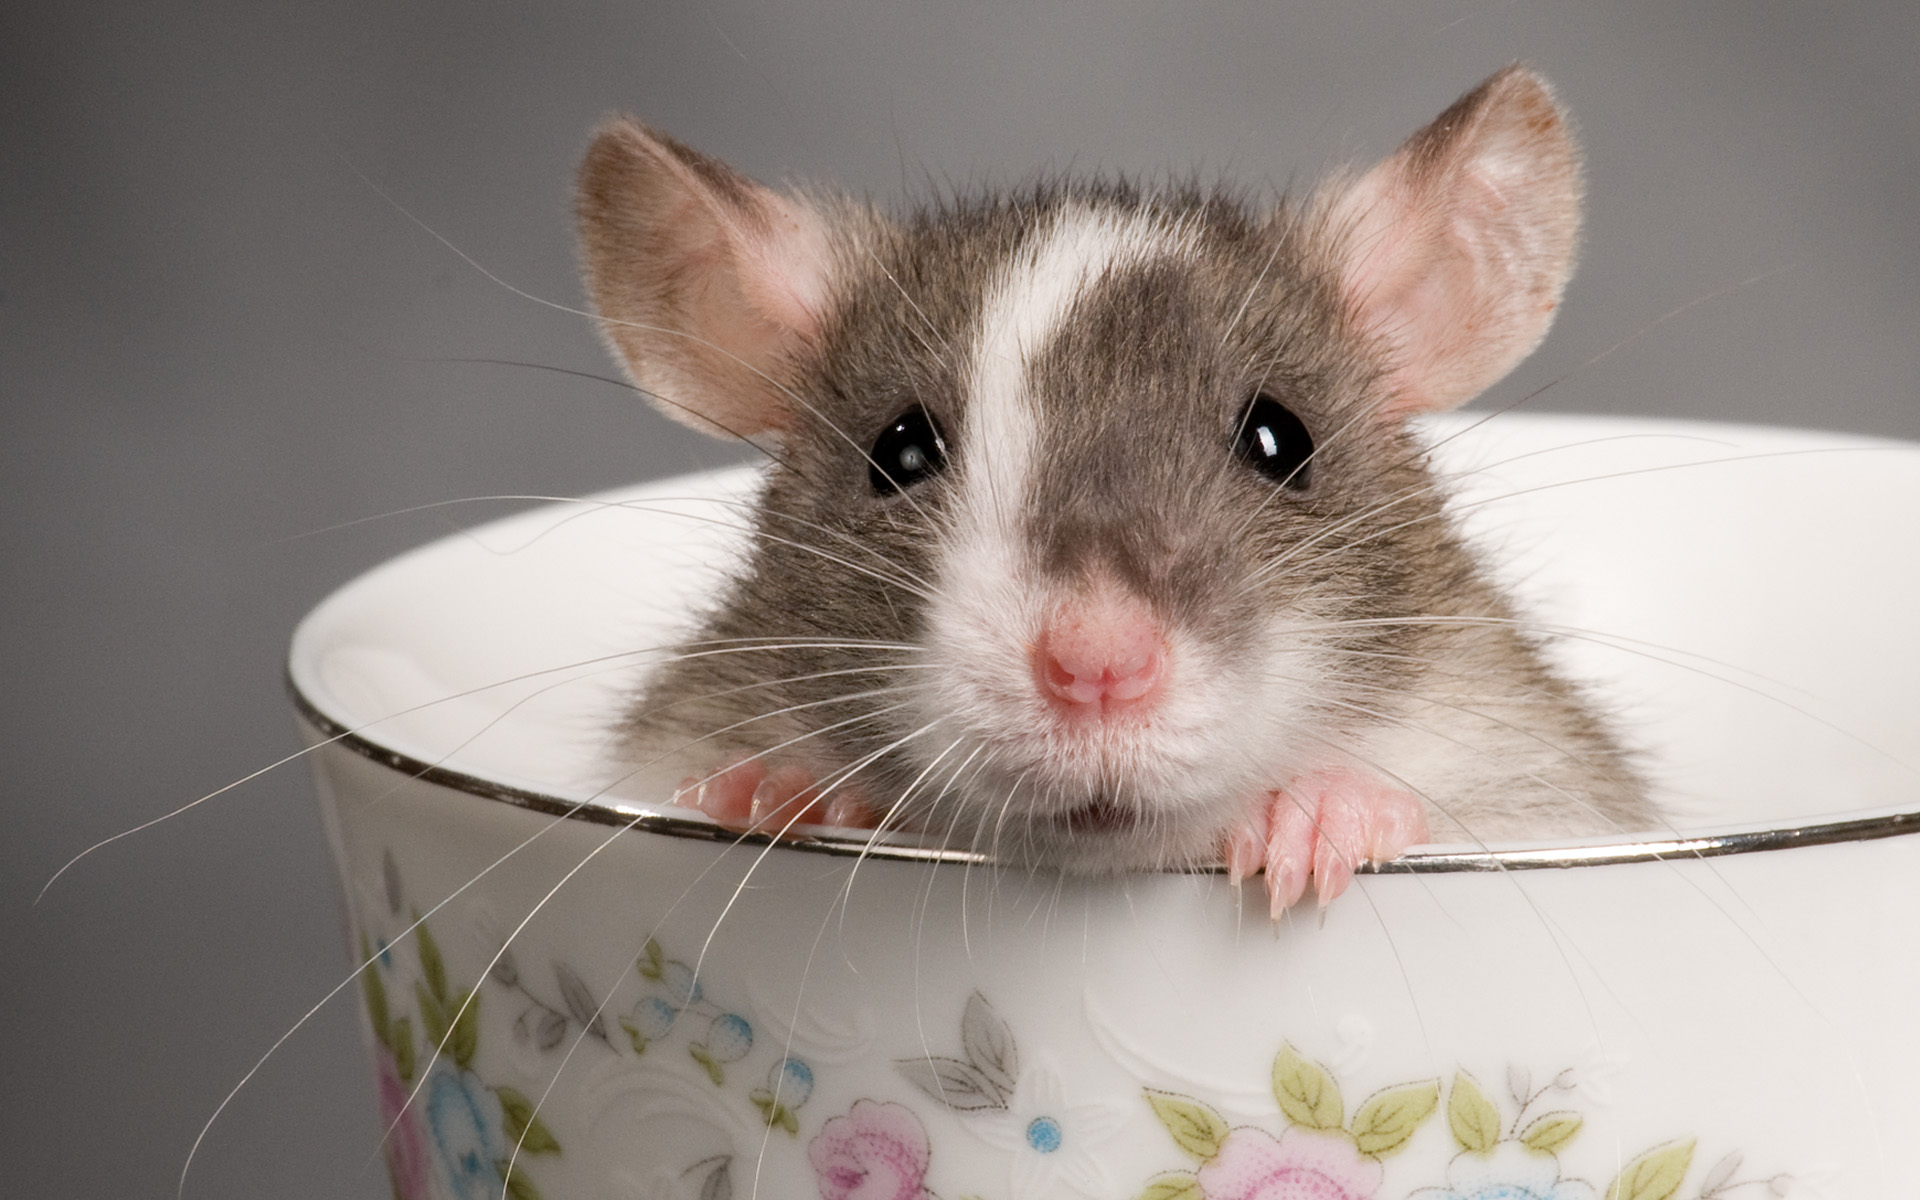 ratinho dentro e uma xícara wallpaper para pc